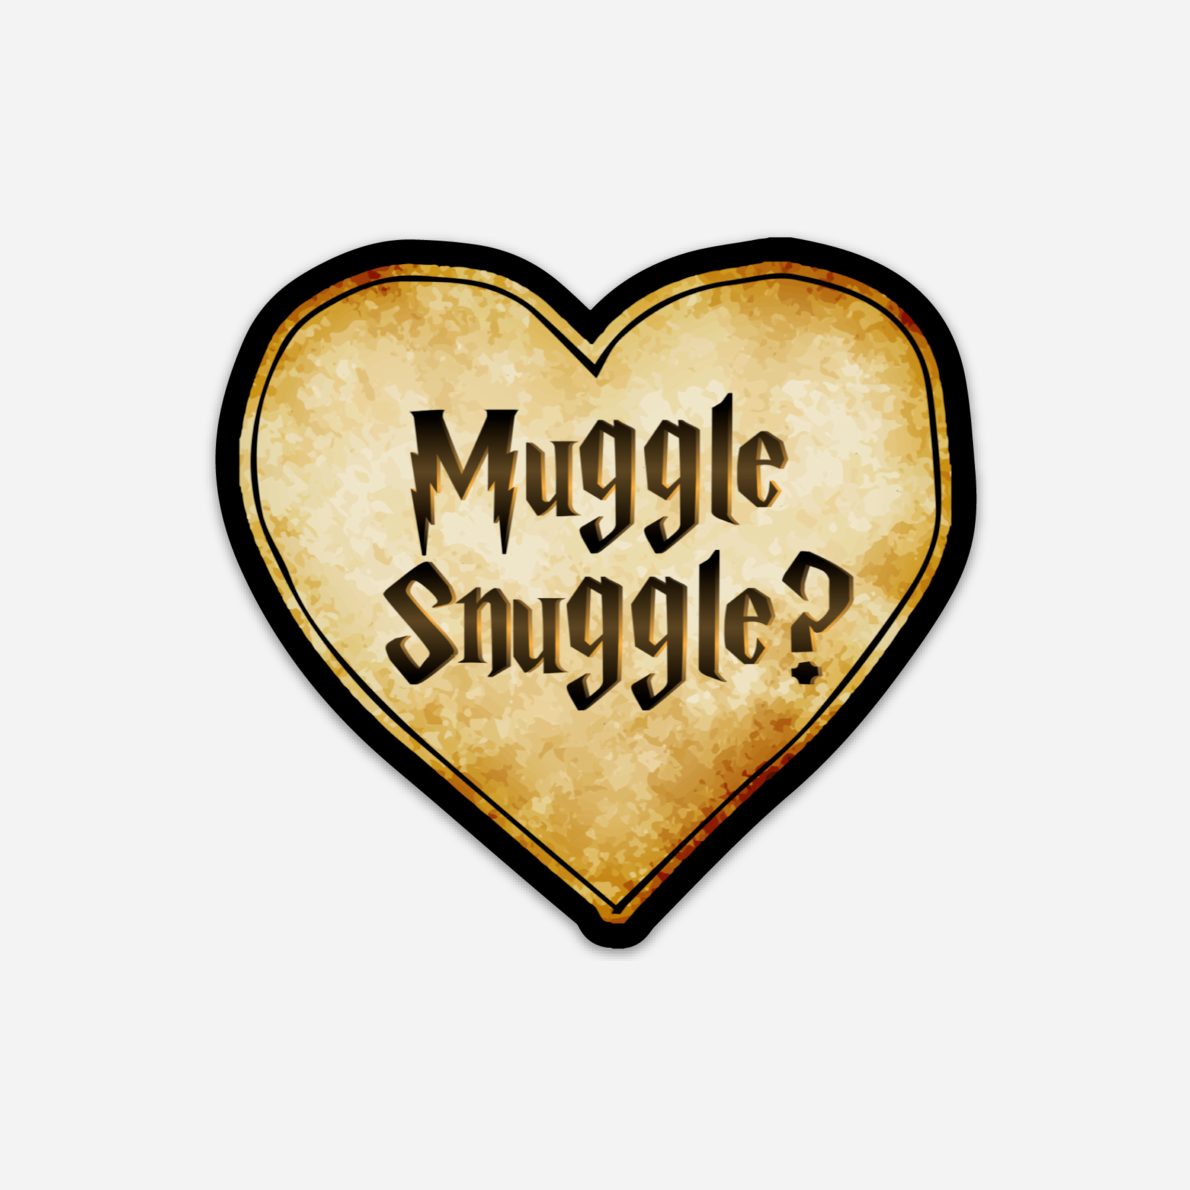 Muggle Snuggle